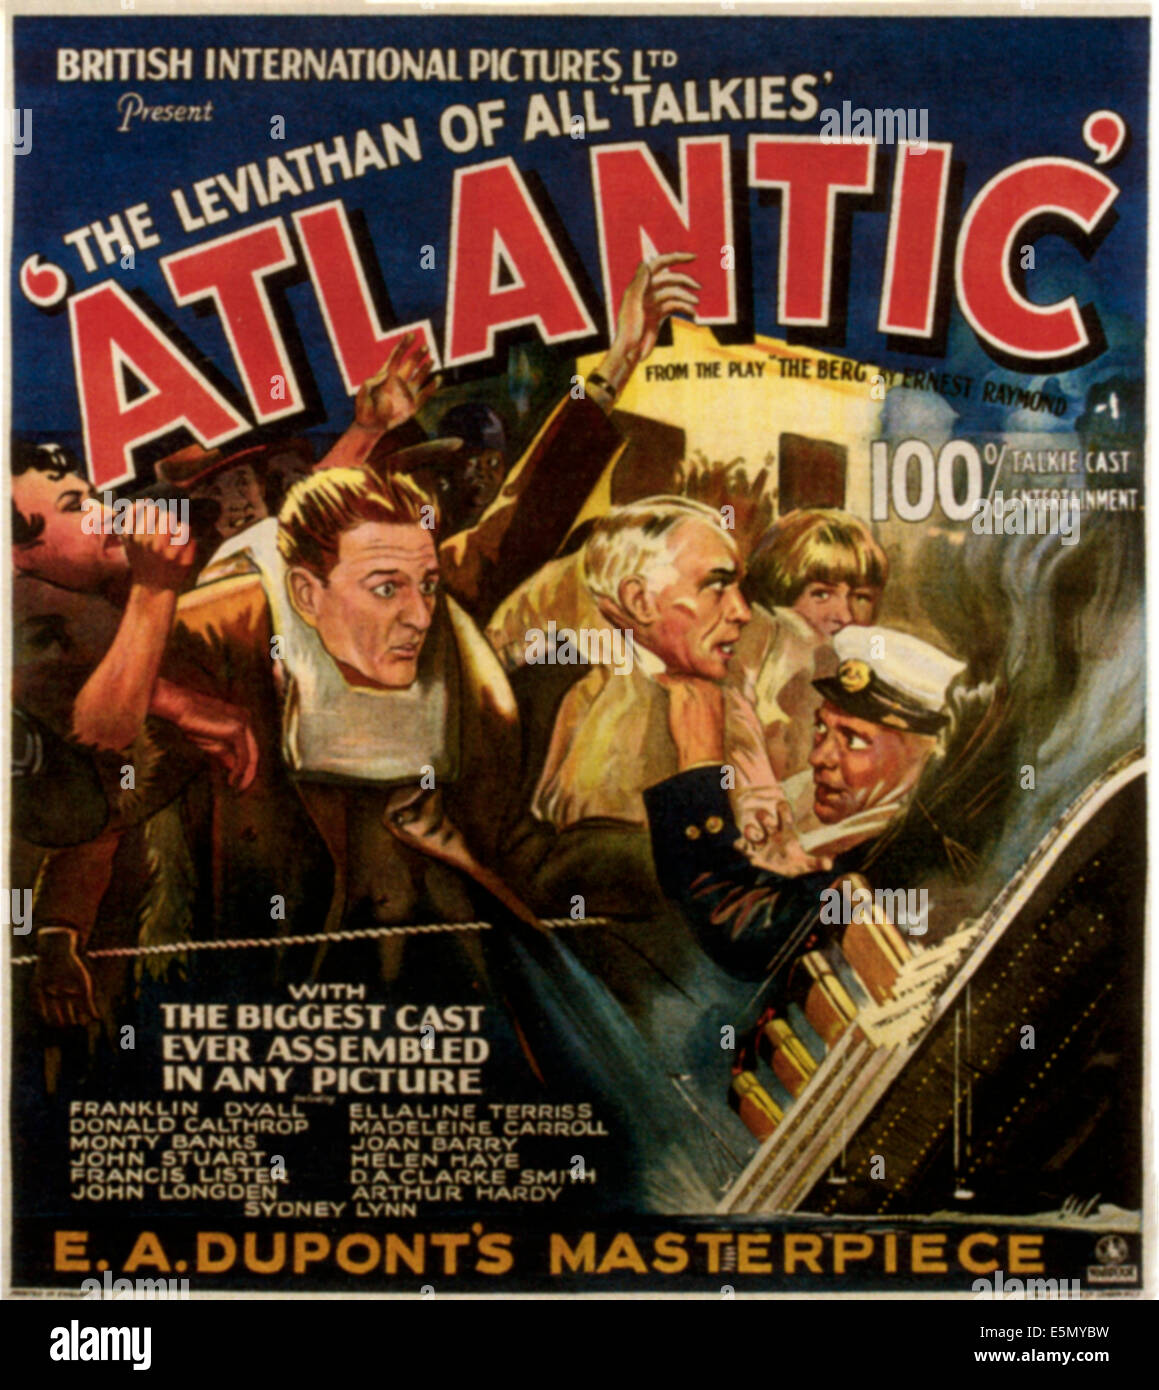 ATLANTIC, 1929. Stock Photo